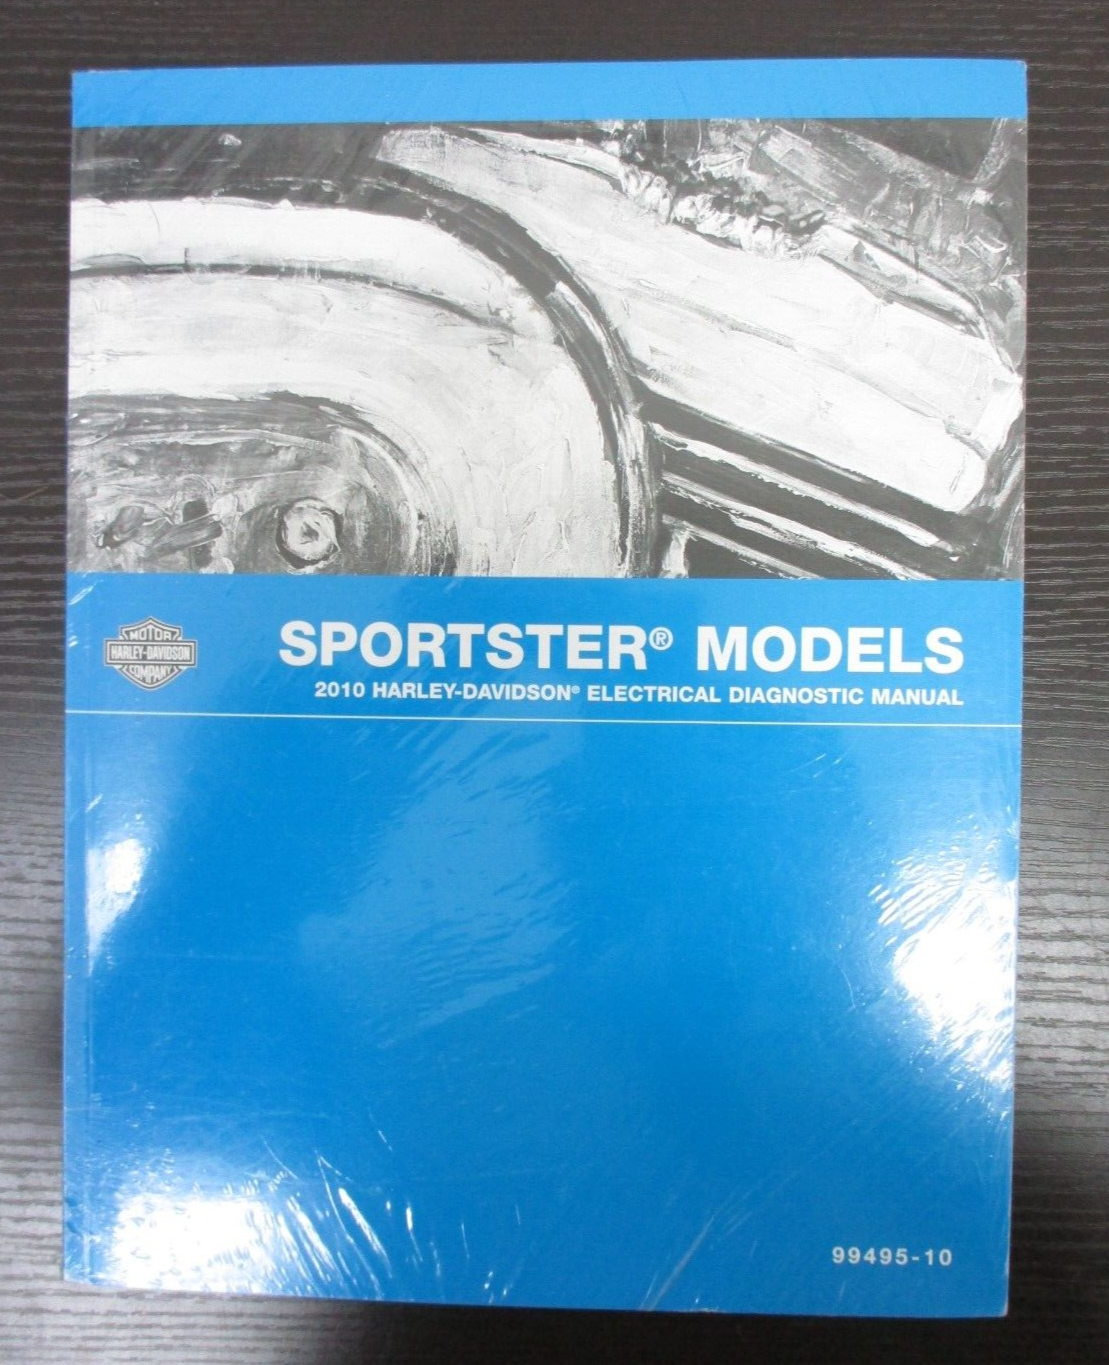 Harley-Davidson Sportster Models 2010 Electrical Diagnostic Manual  99495-10